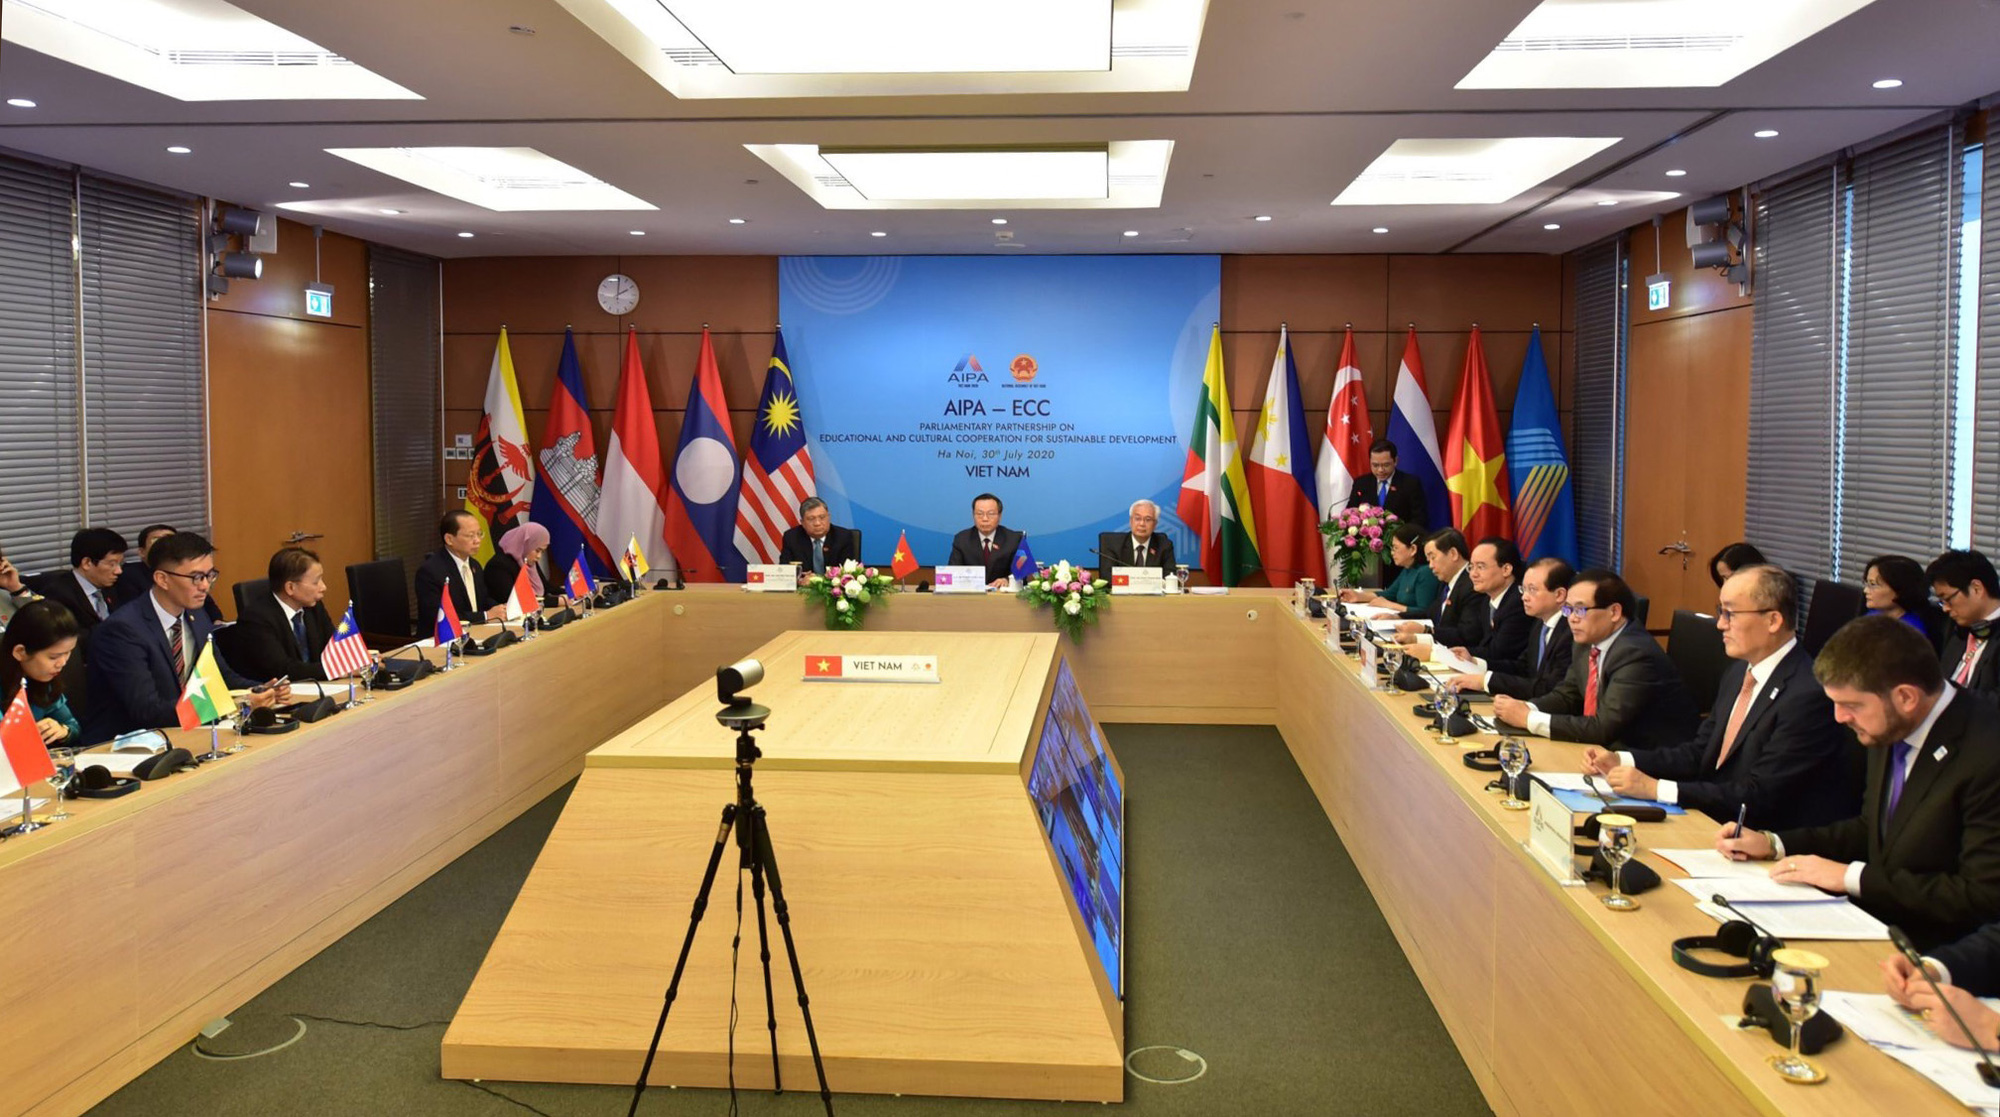 Thứ trưởng Tạ Quang Đông tham dự Hội nghị quốc tế “Đối tác nghị viện về hợp tác văn hóa, giáo dục vì sự phát triển bền vững” - Ảnh 1.